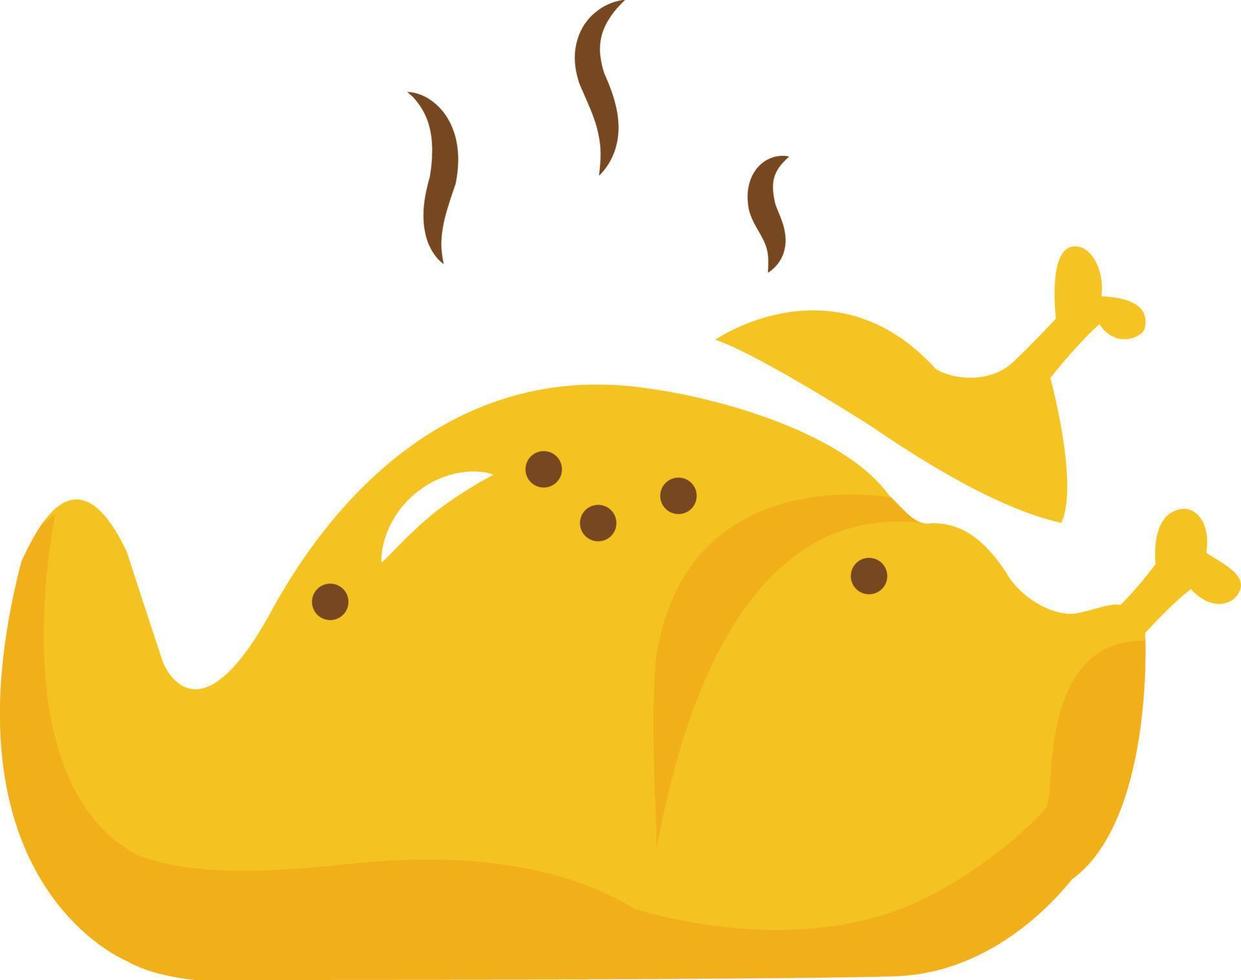 roast-chicken Illustration Vector